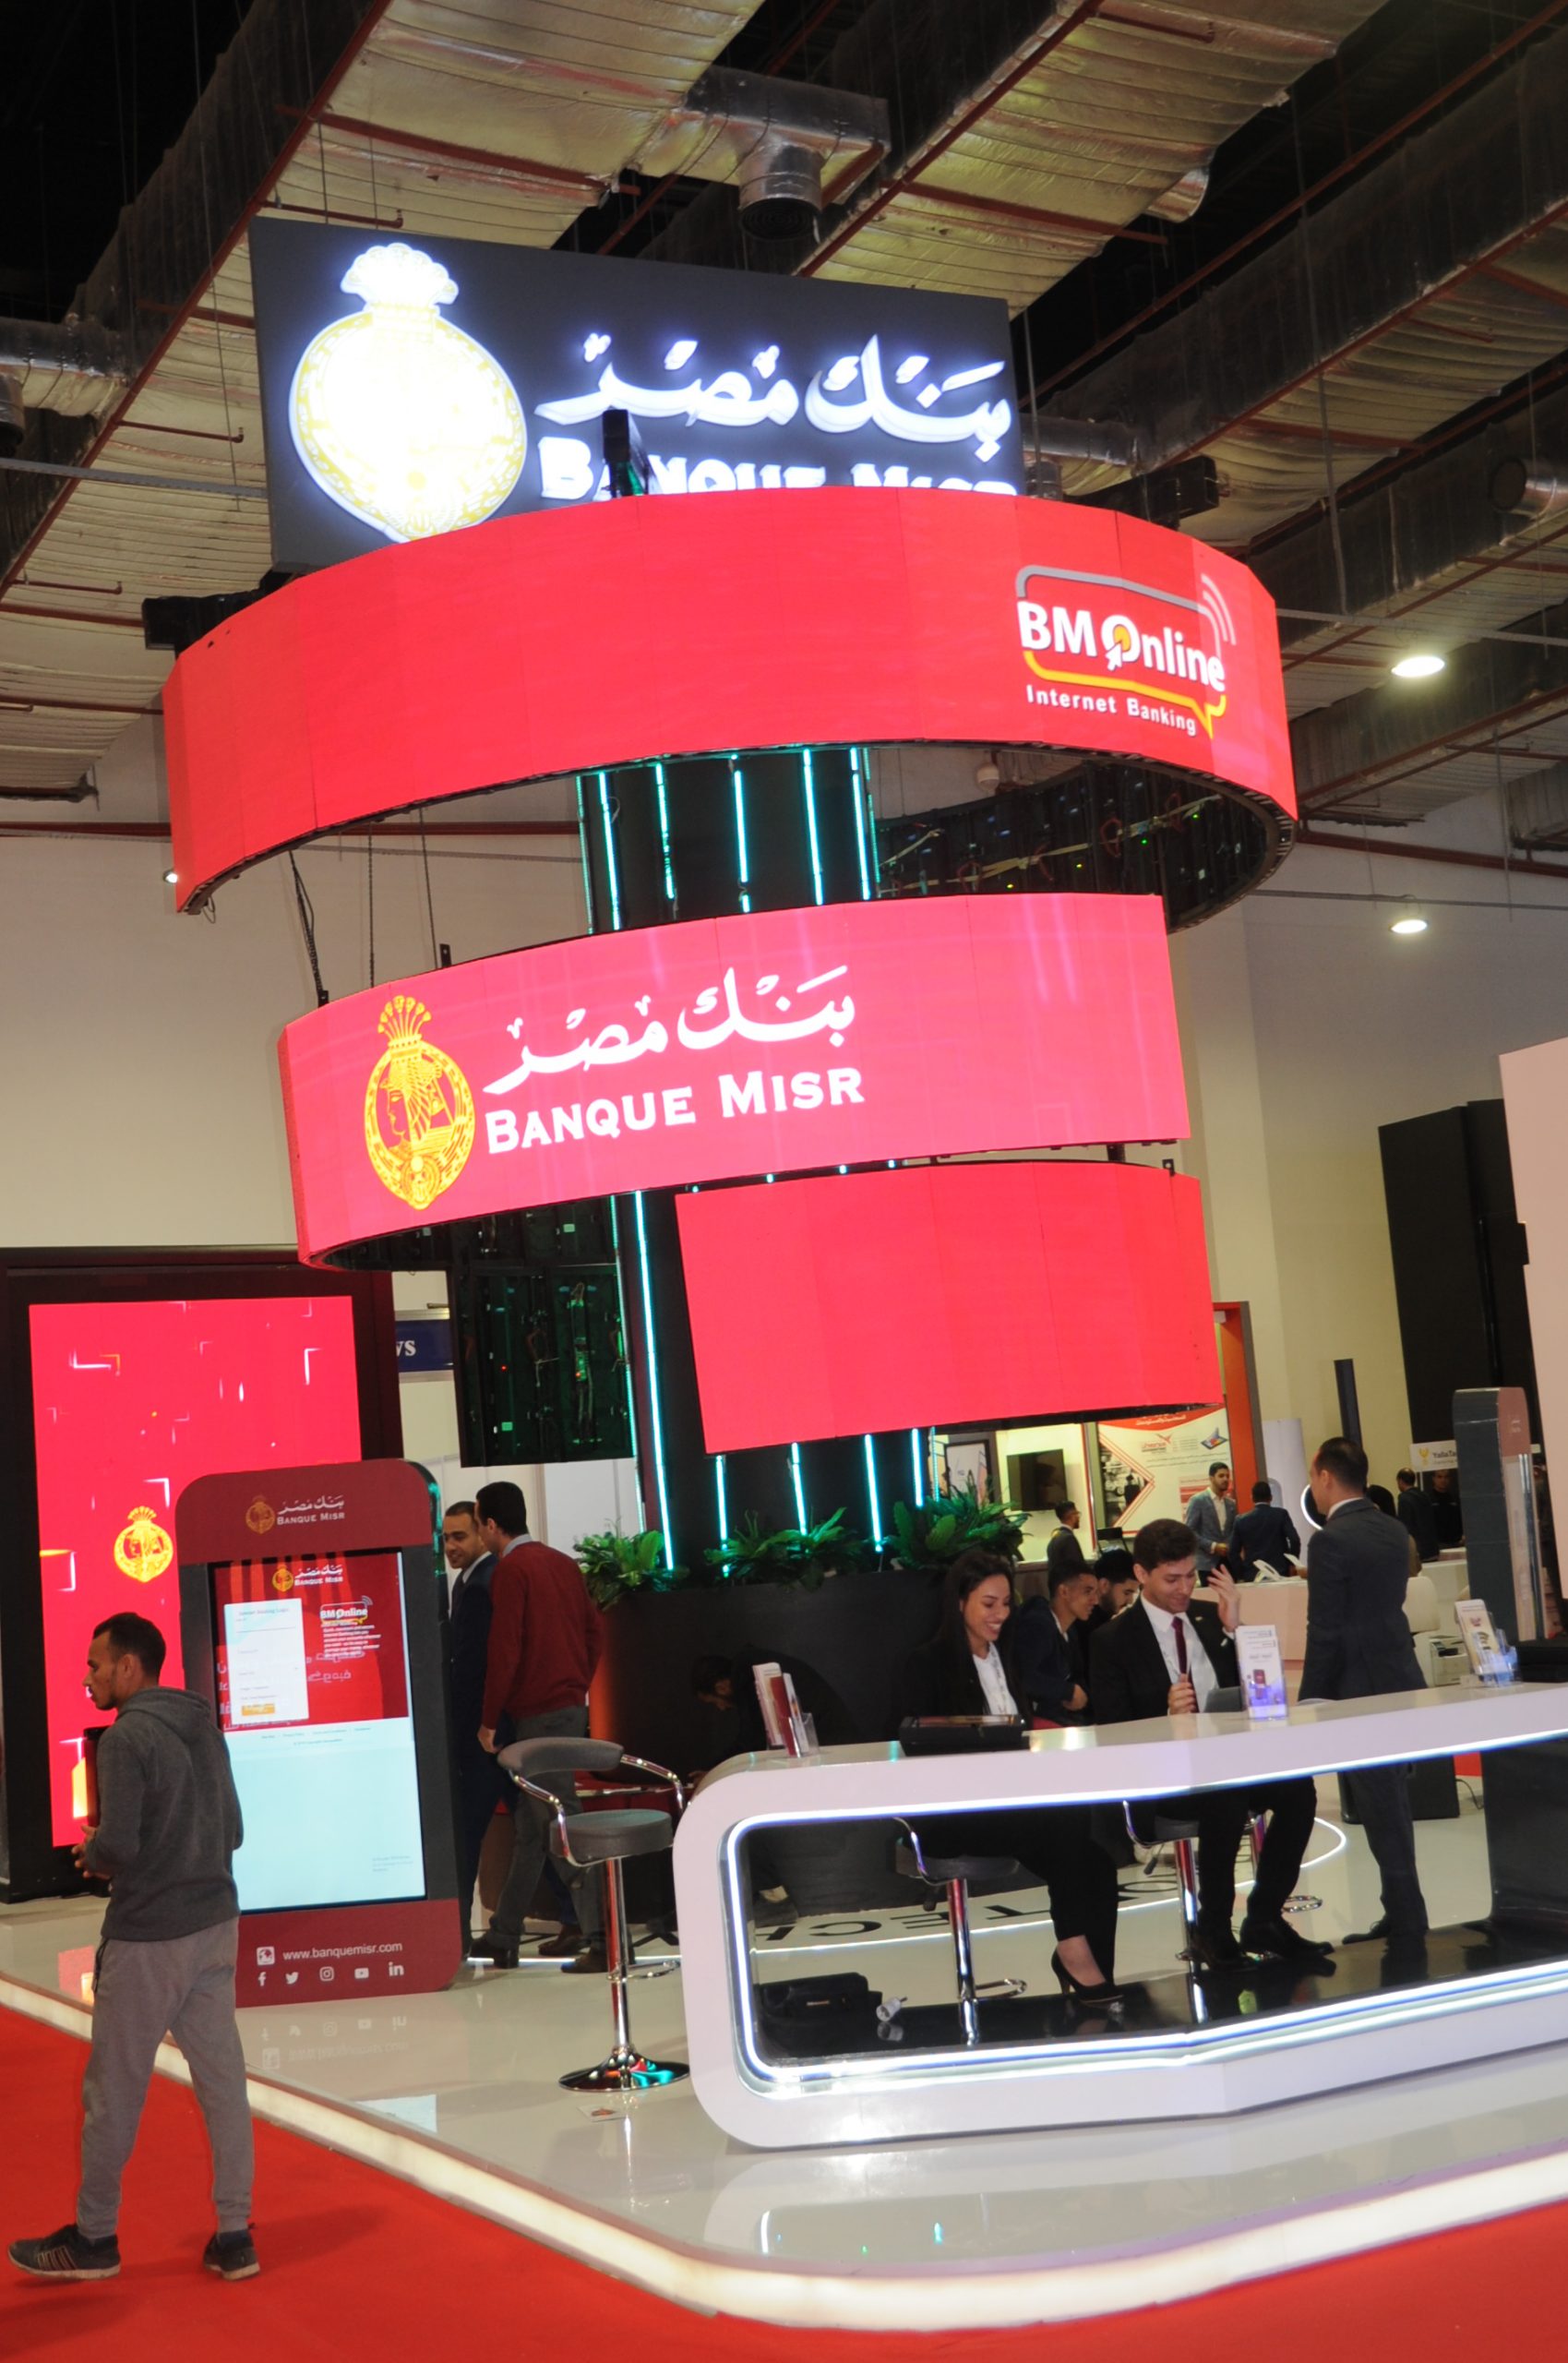   بنك مصر يشارك في فعاليات المعرض الدولي للاتصالات وتكنولوجيا المعلومات كايرو آي سي تي 2019 في دورته الــ 23